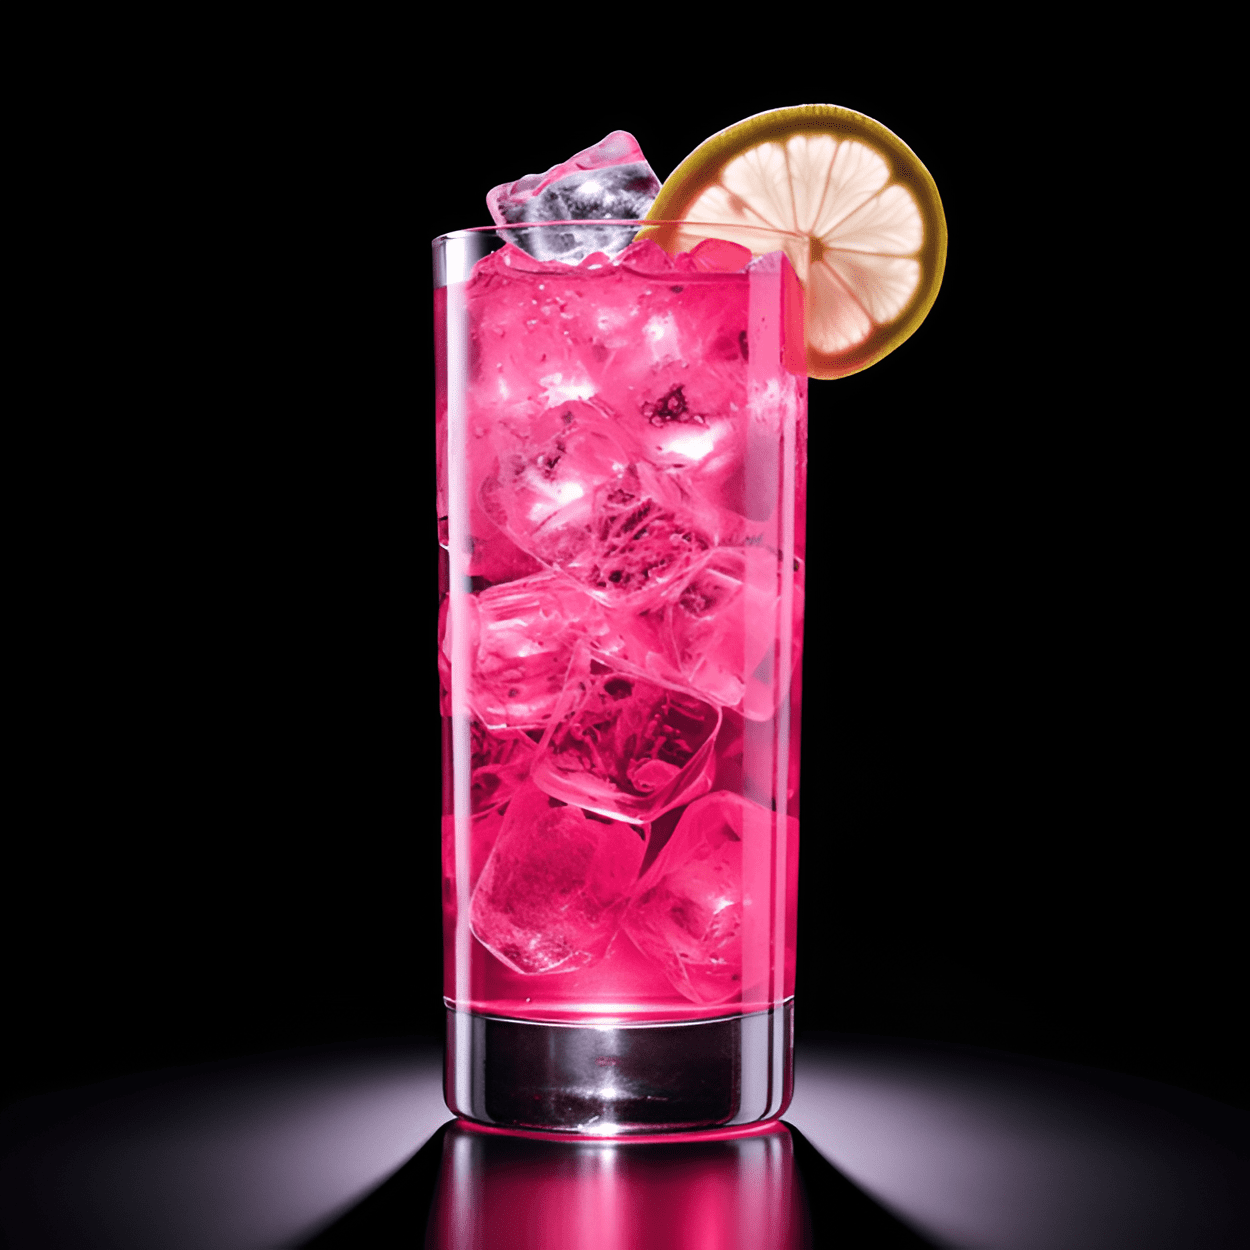 Pink Whitney Cóctel Receta - El Pink Whitney es un cóctel deliciosamente dulce con un matiz agrio. La limonada rosa le da un sabor cítrico refrescante, mientras que el vodka añade una patada suave y fuerte. Es una bebida bien equilibrada que es tanto dulce como agria, con un sabor vibrante y afrutado que perdura en el paladar.